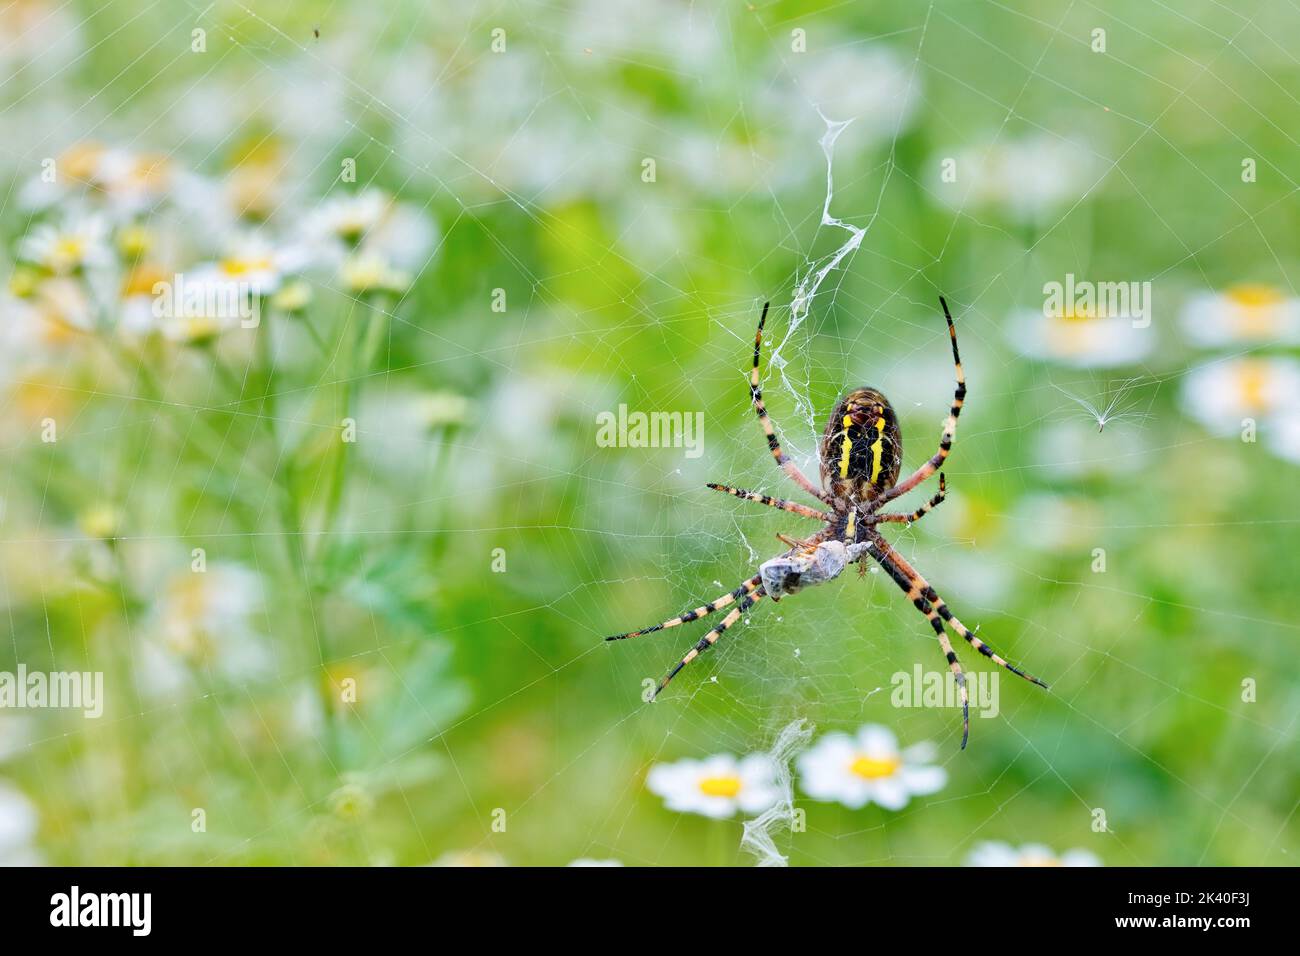 Argiope nero e giallo, spider da giardino nero e giallo (Argiope bruennichi), con preda in ciottoli, vista dal basso, Germania Foto Stock